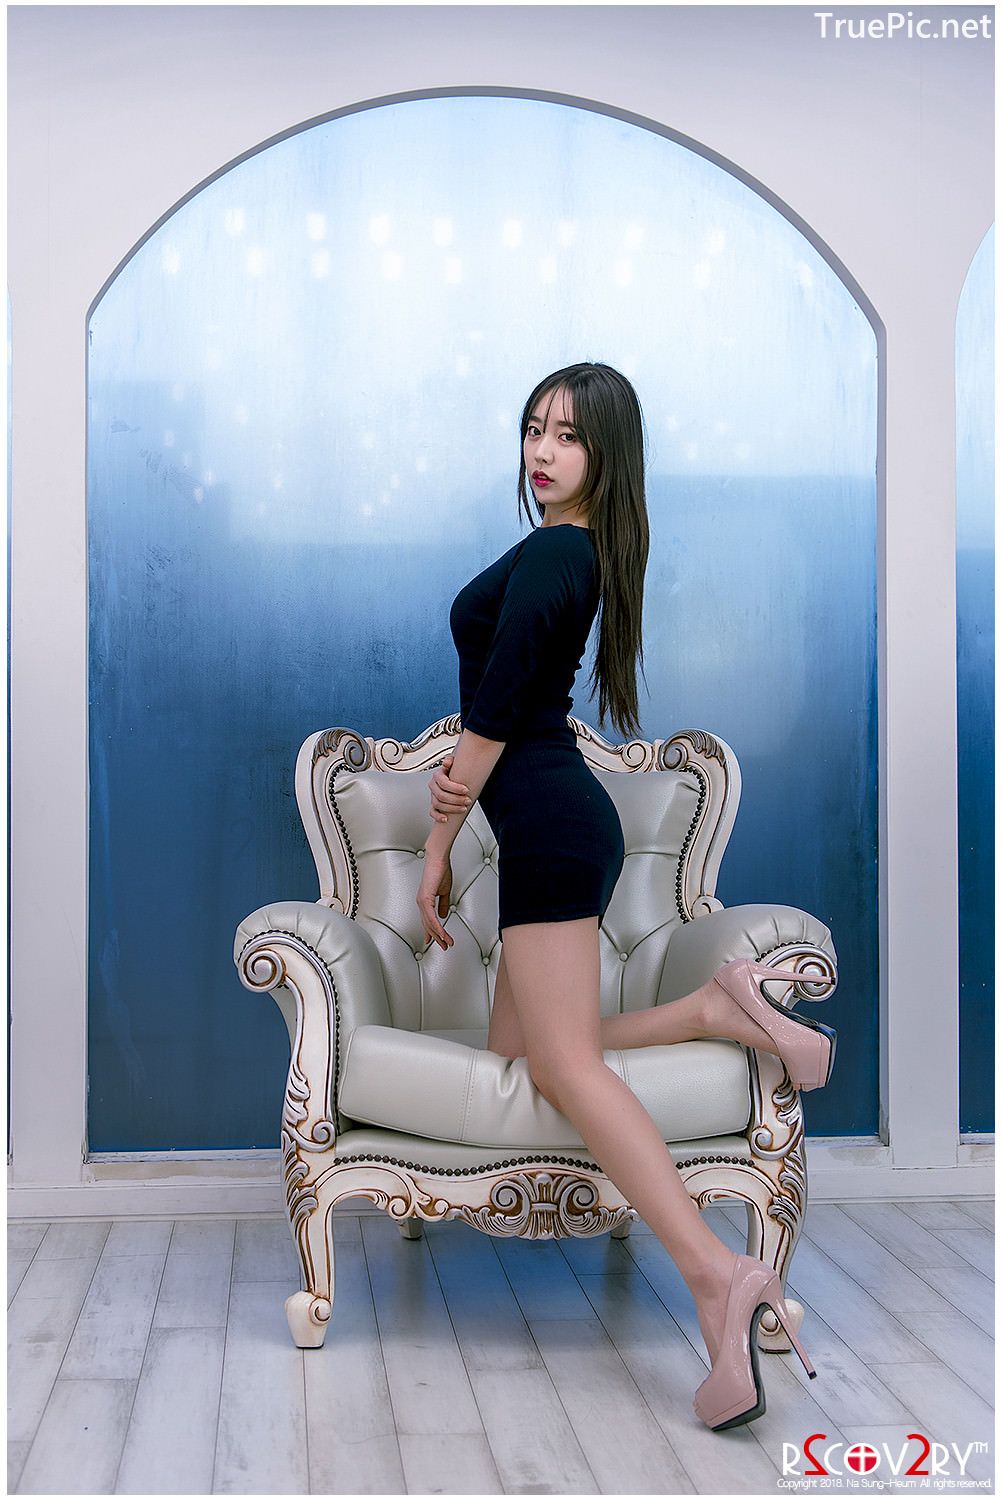 Image-Korean-Hot-Model-Go-Eun-Yang-Indoor-Photoshoot-Collection-TruePic.net- Picture-38